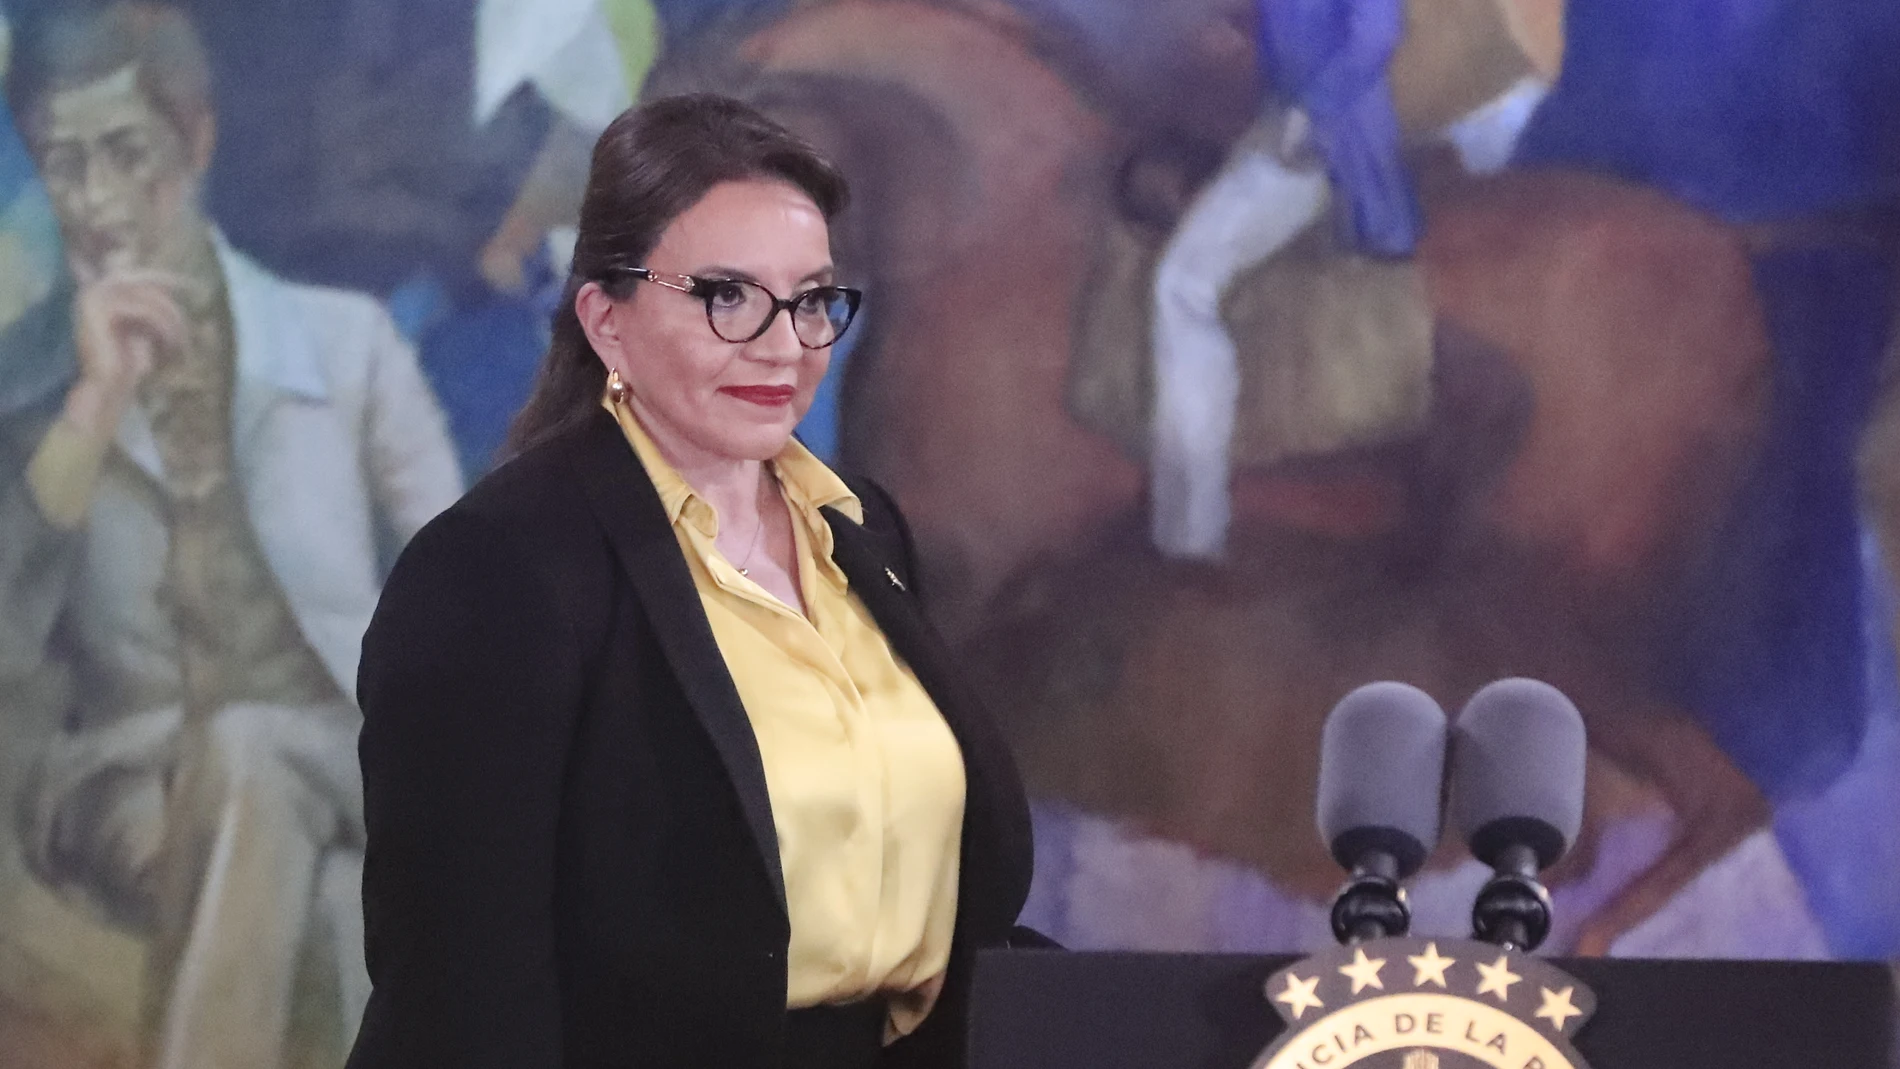 La presidenta de Honduras, Xiomara Castro, en una fotografía de archivo